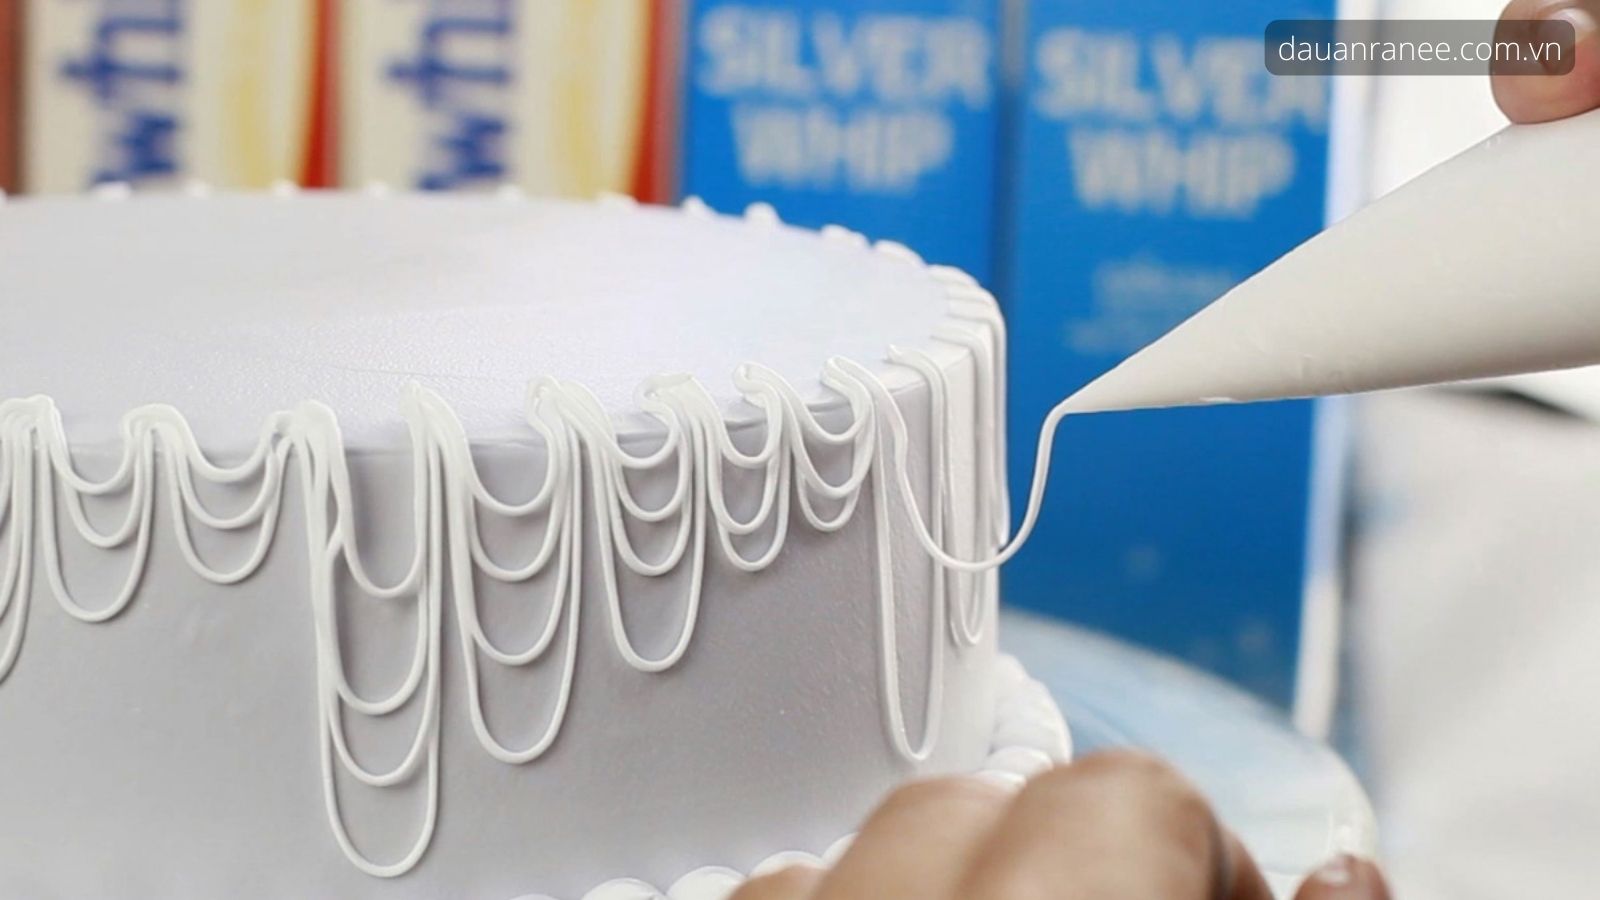 Đui bắt kem - giải pháp thông minh dành cho chiếc kiểu bánh sinh nhật đơn giản đẹp